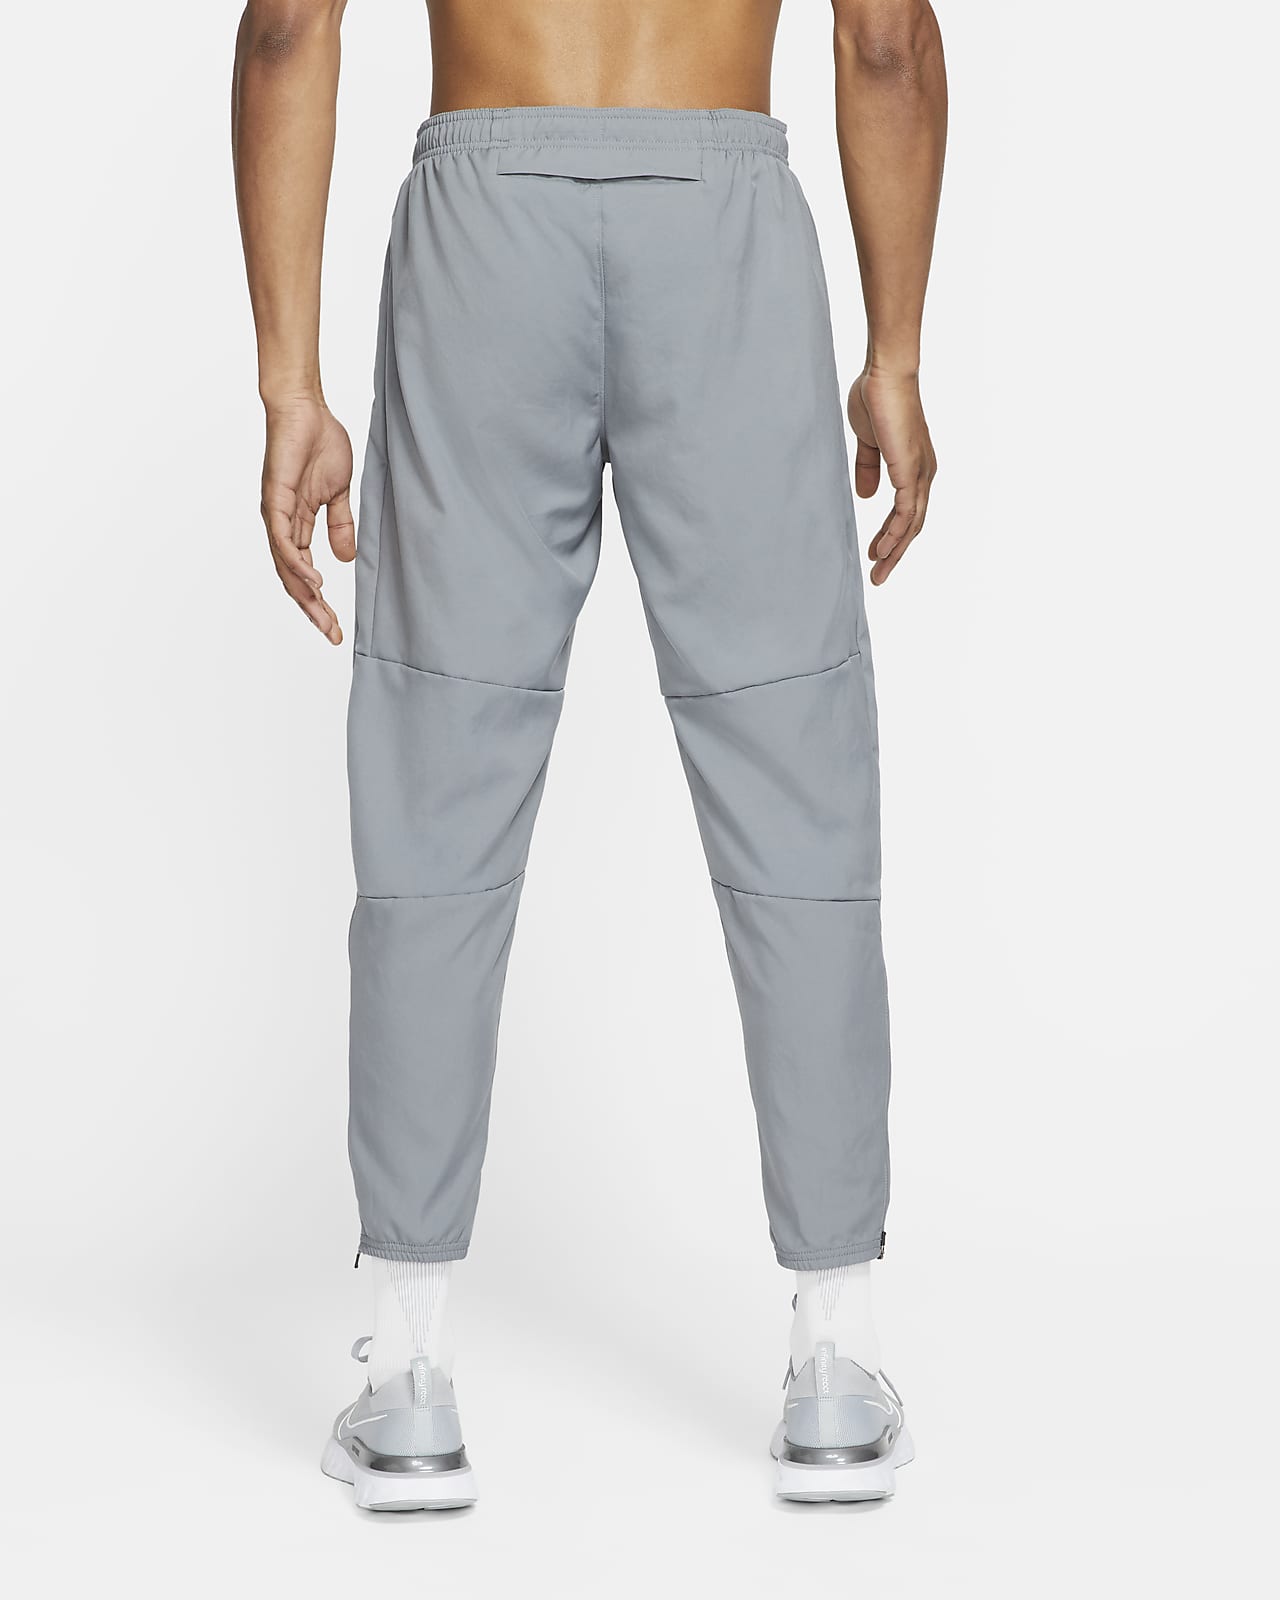 Nike Men's Therma-FIT Yoga Pants | Dick's Sporting Goods